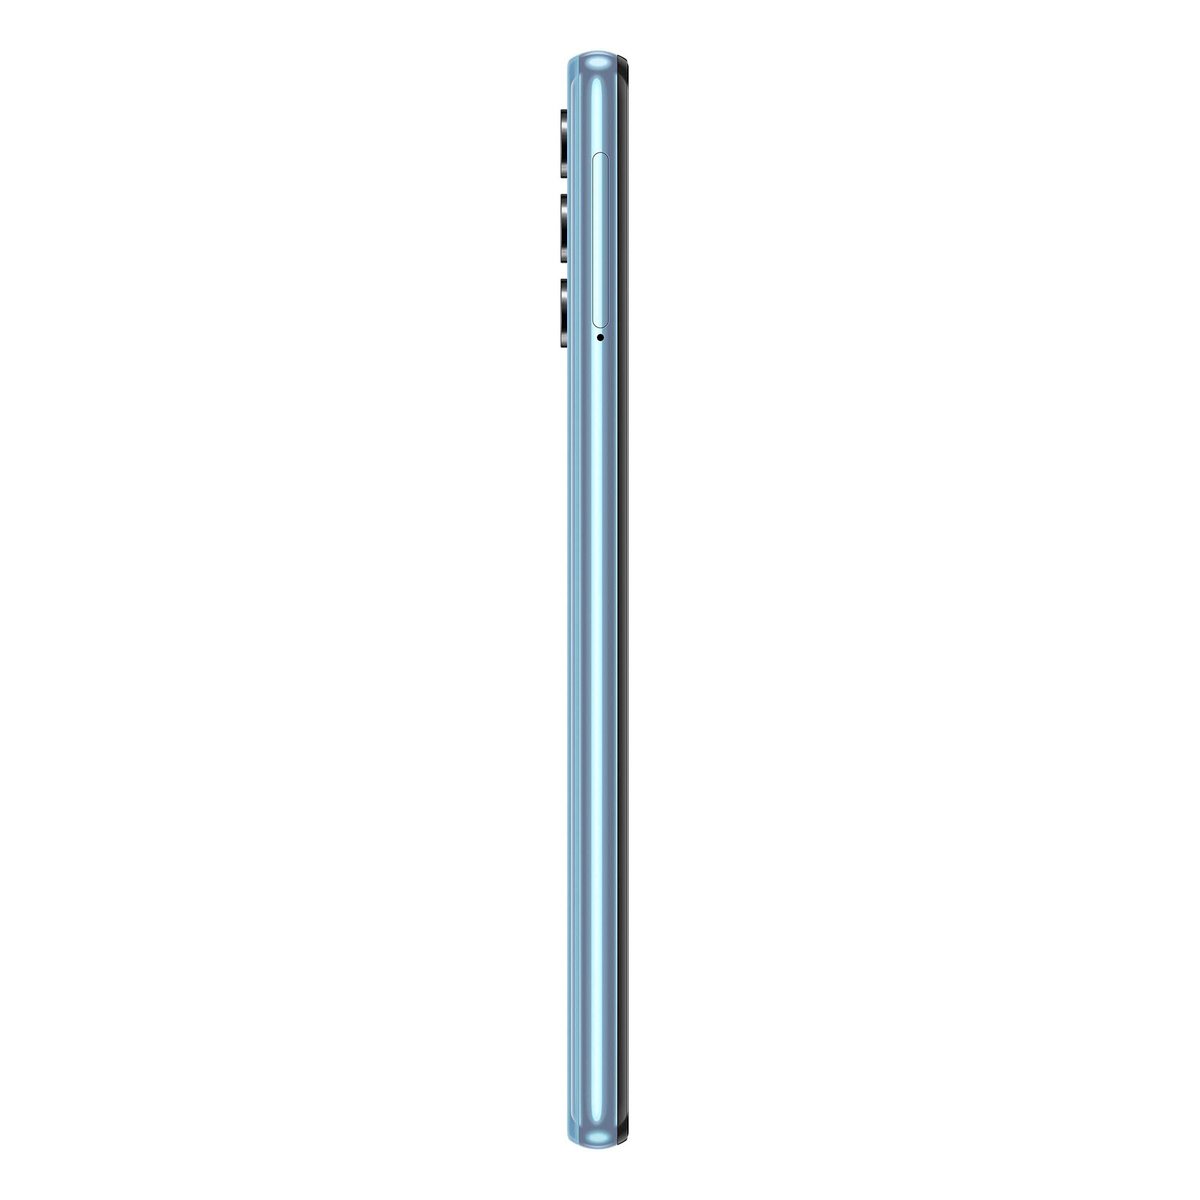 Samsung Galaxy A32 SM-A326 128GB 5G Blue